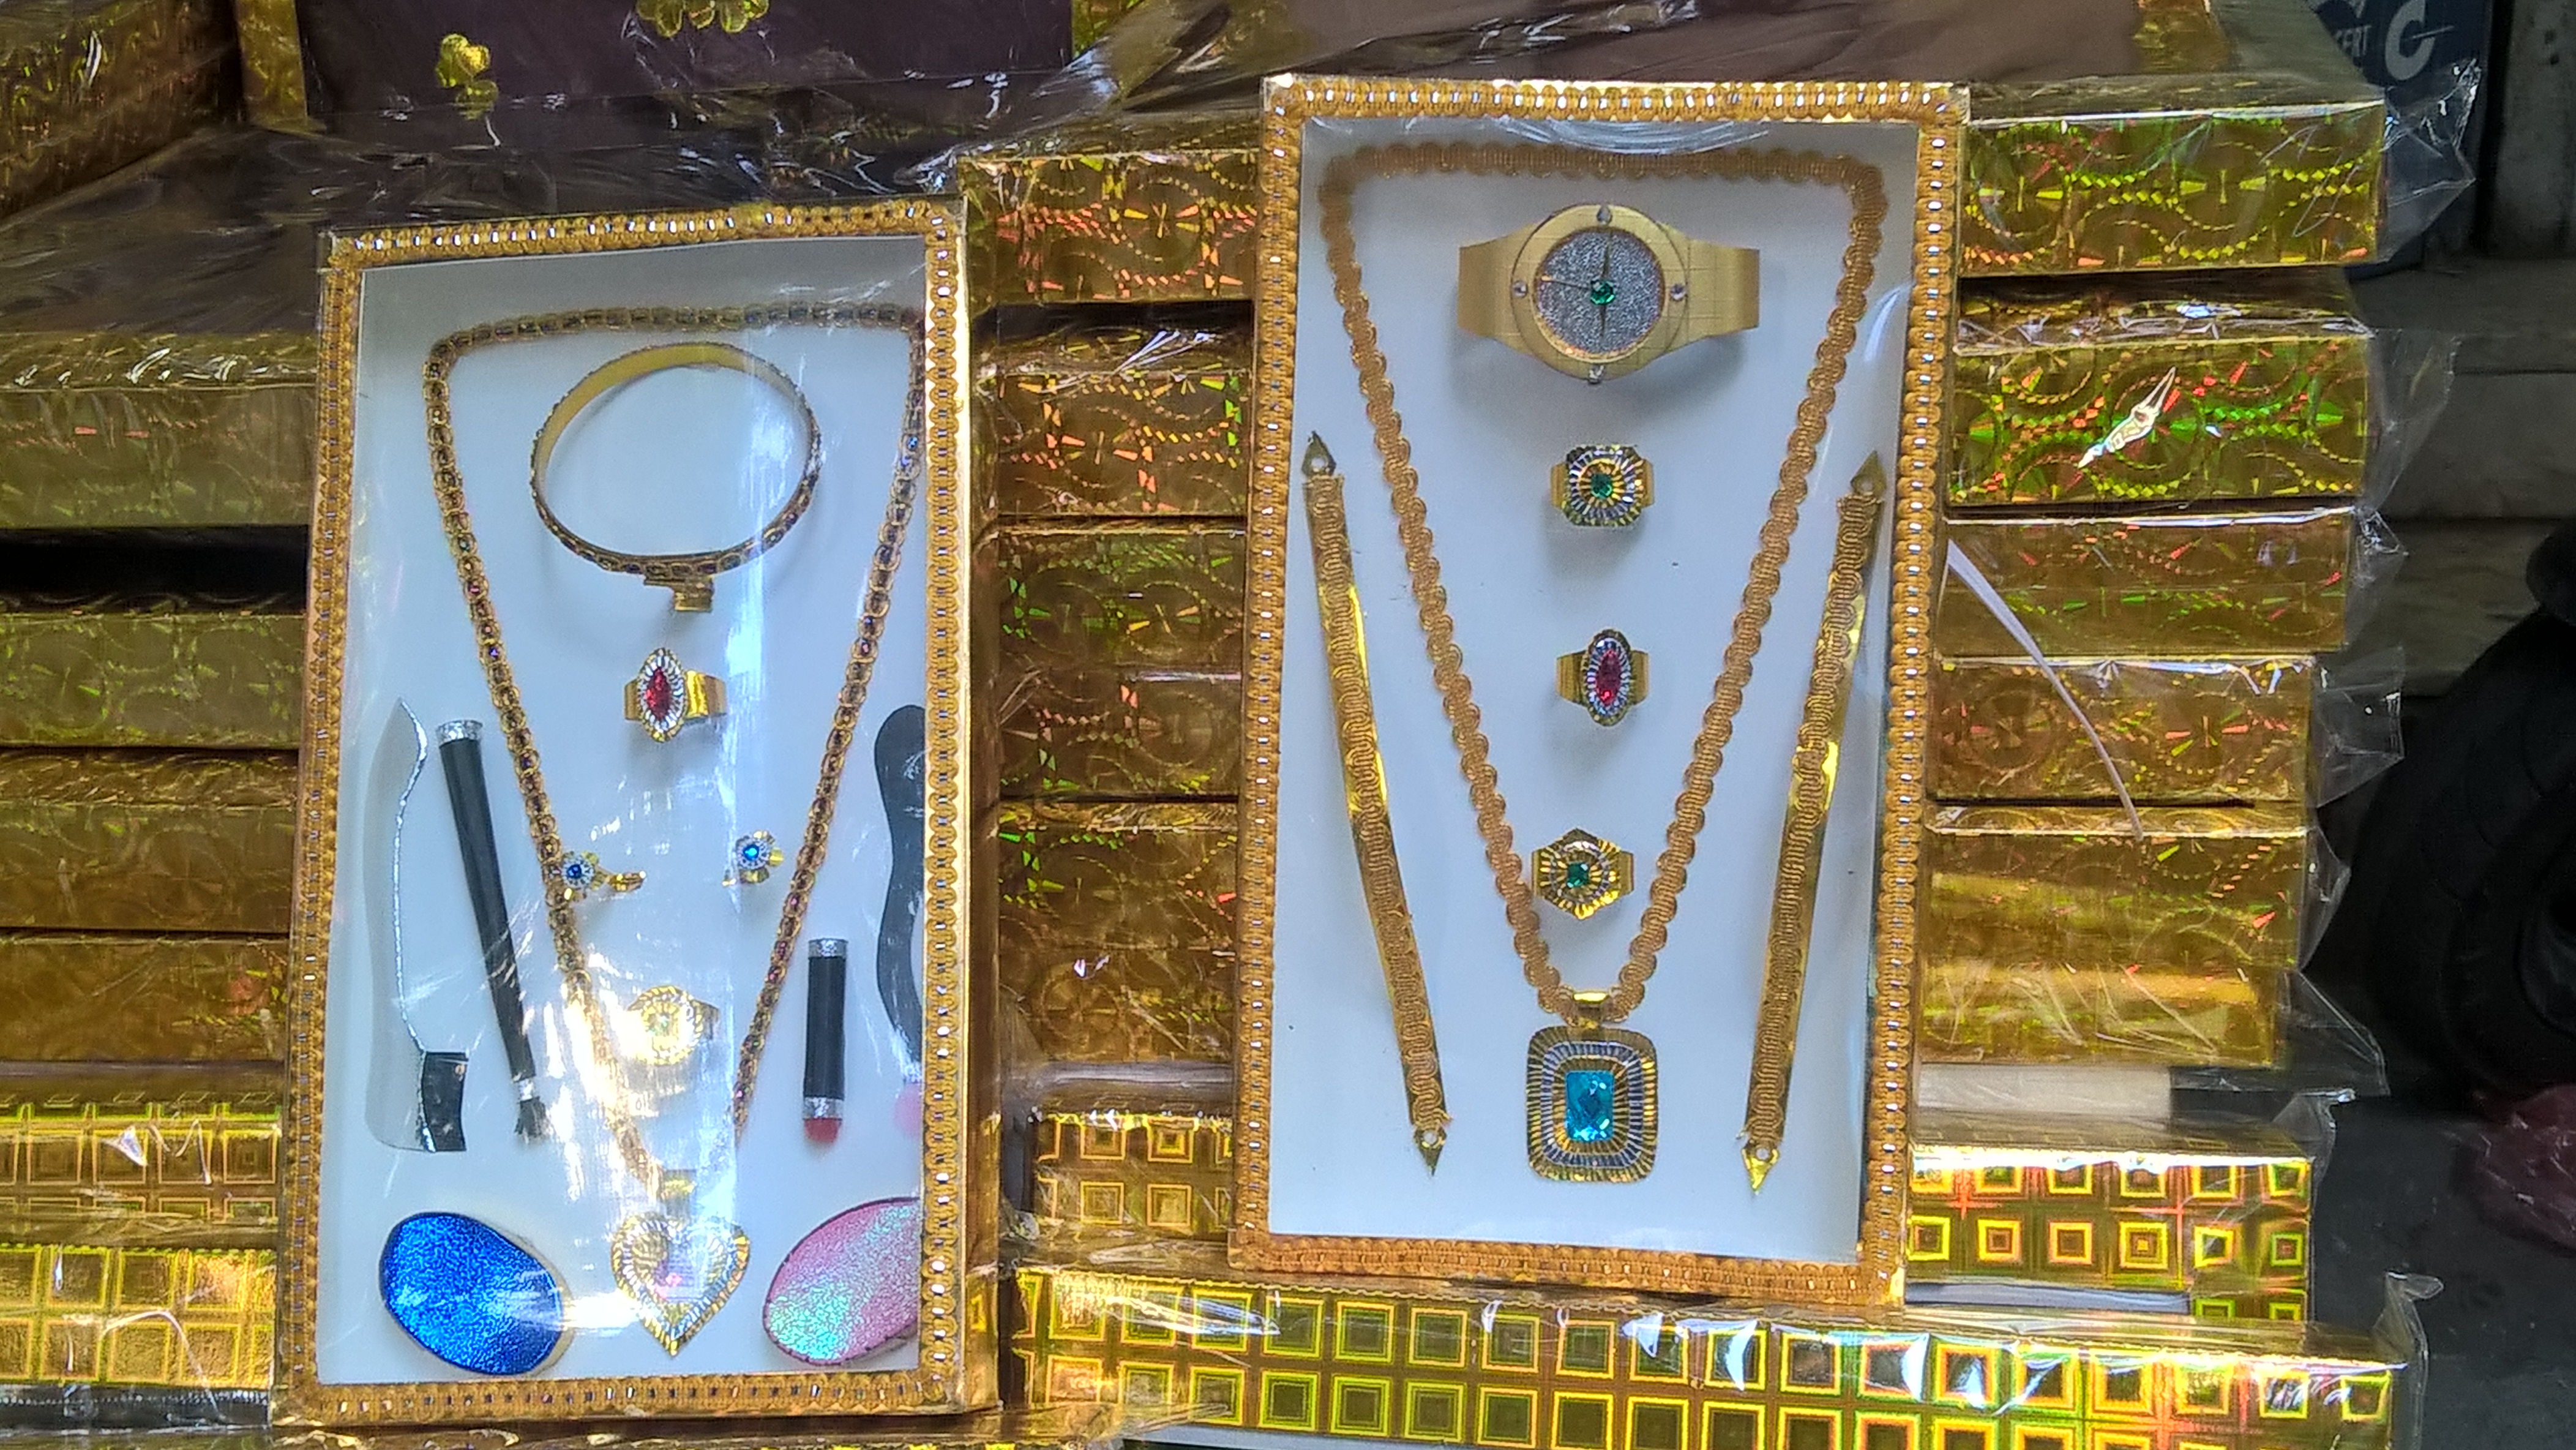 
Vàng, kim cương, dây truyền vàng cũng thiết kế rất đẹp. Theo chủ quán, mặt hàng sang chảnh này lại có giá rất rẻ 80.000 đồng/bộ
